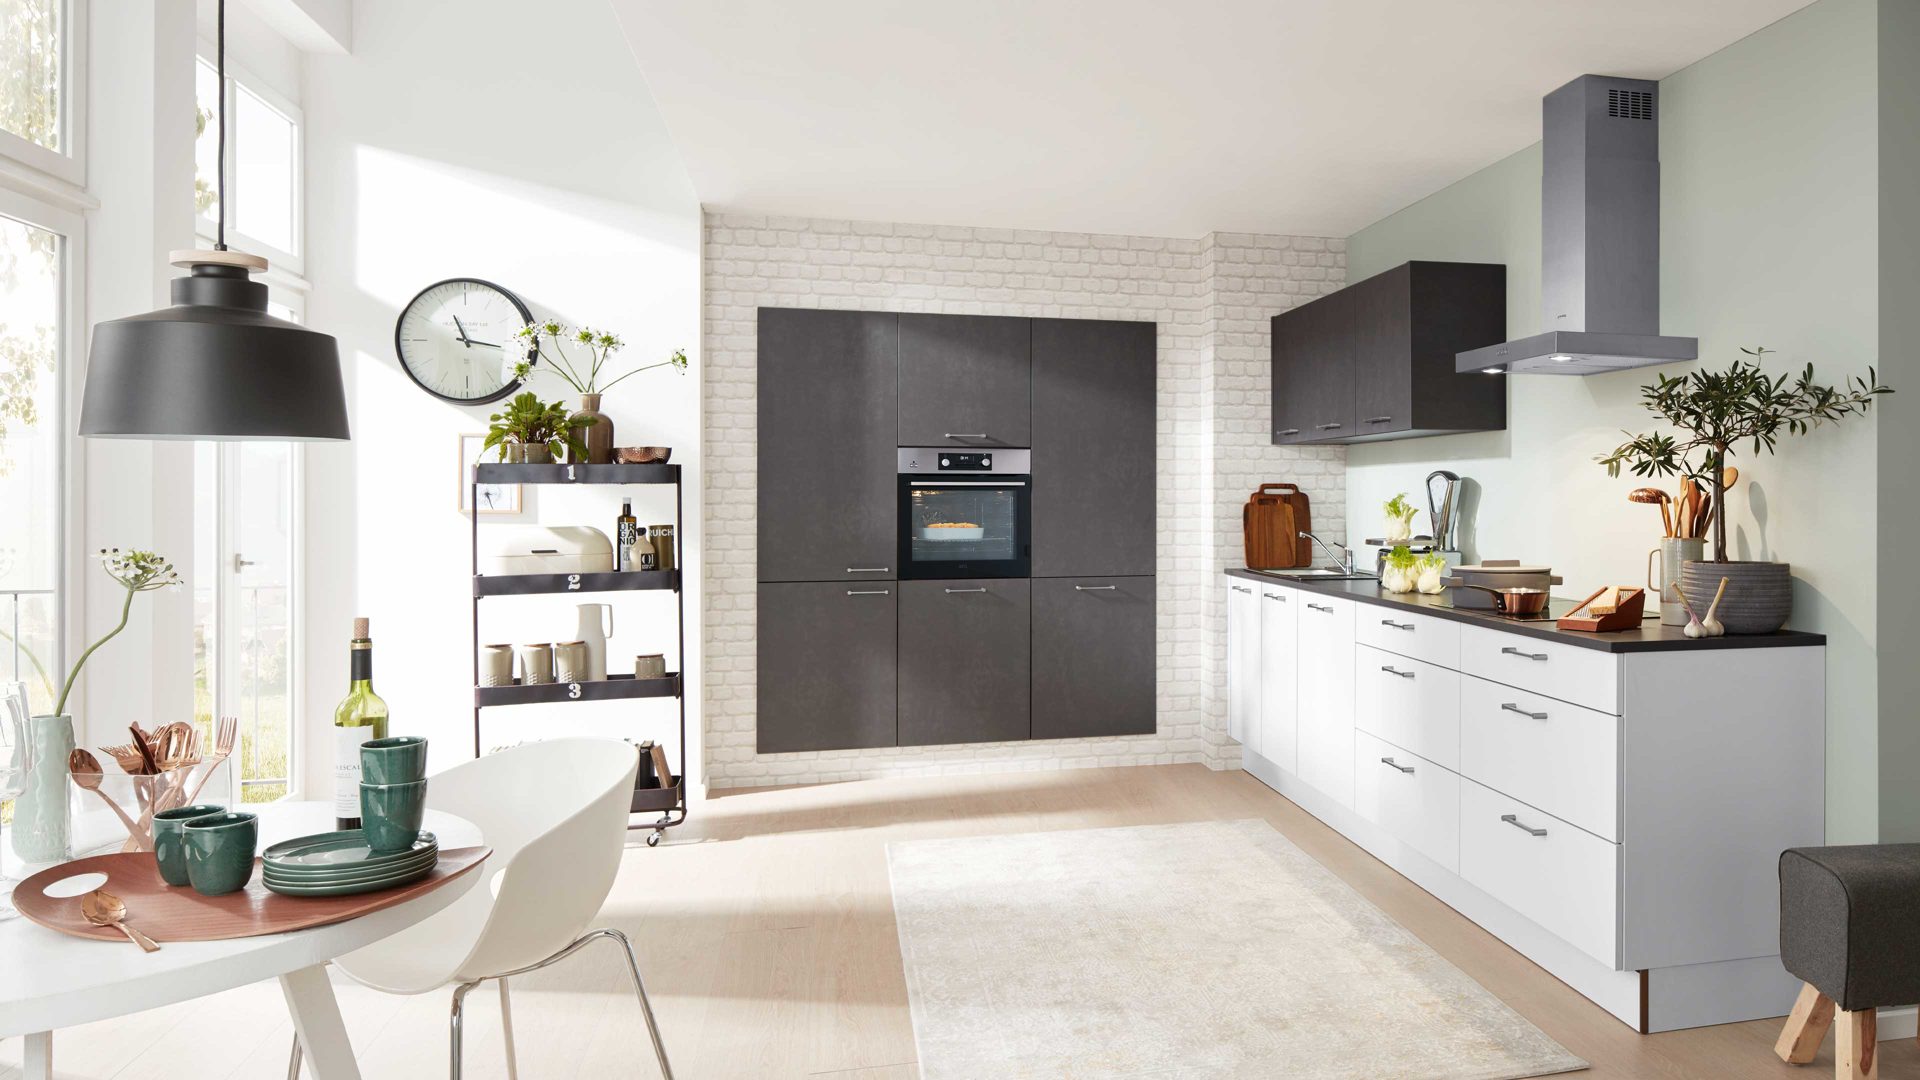 Einbauküche Interliving aus Holz in Grau Interliving Küche Serie 3019 mit AEG Einbaugeräten Weiß & Stahlgrau – zweizeilig